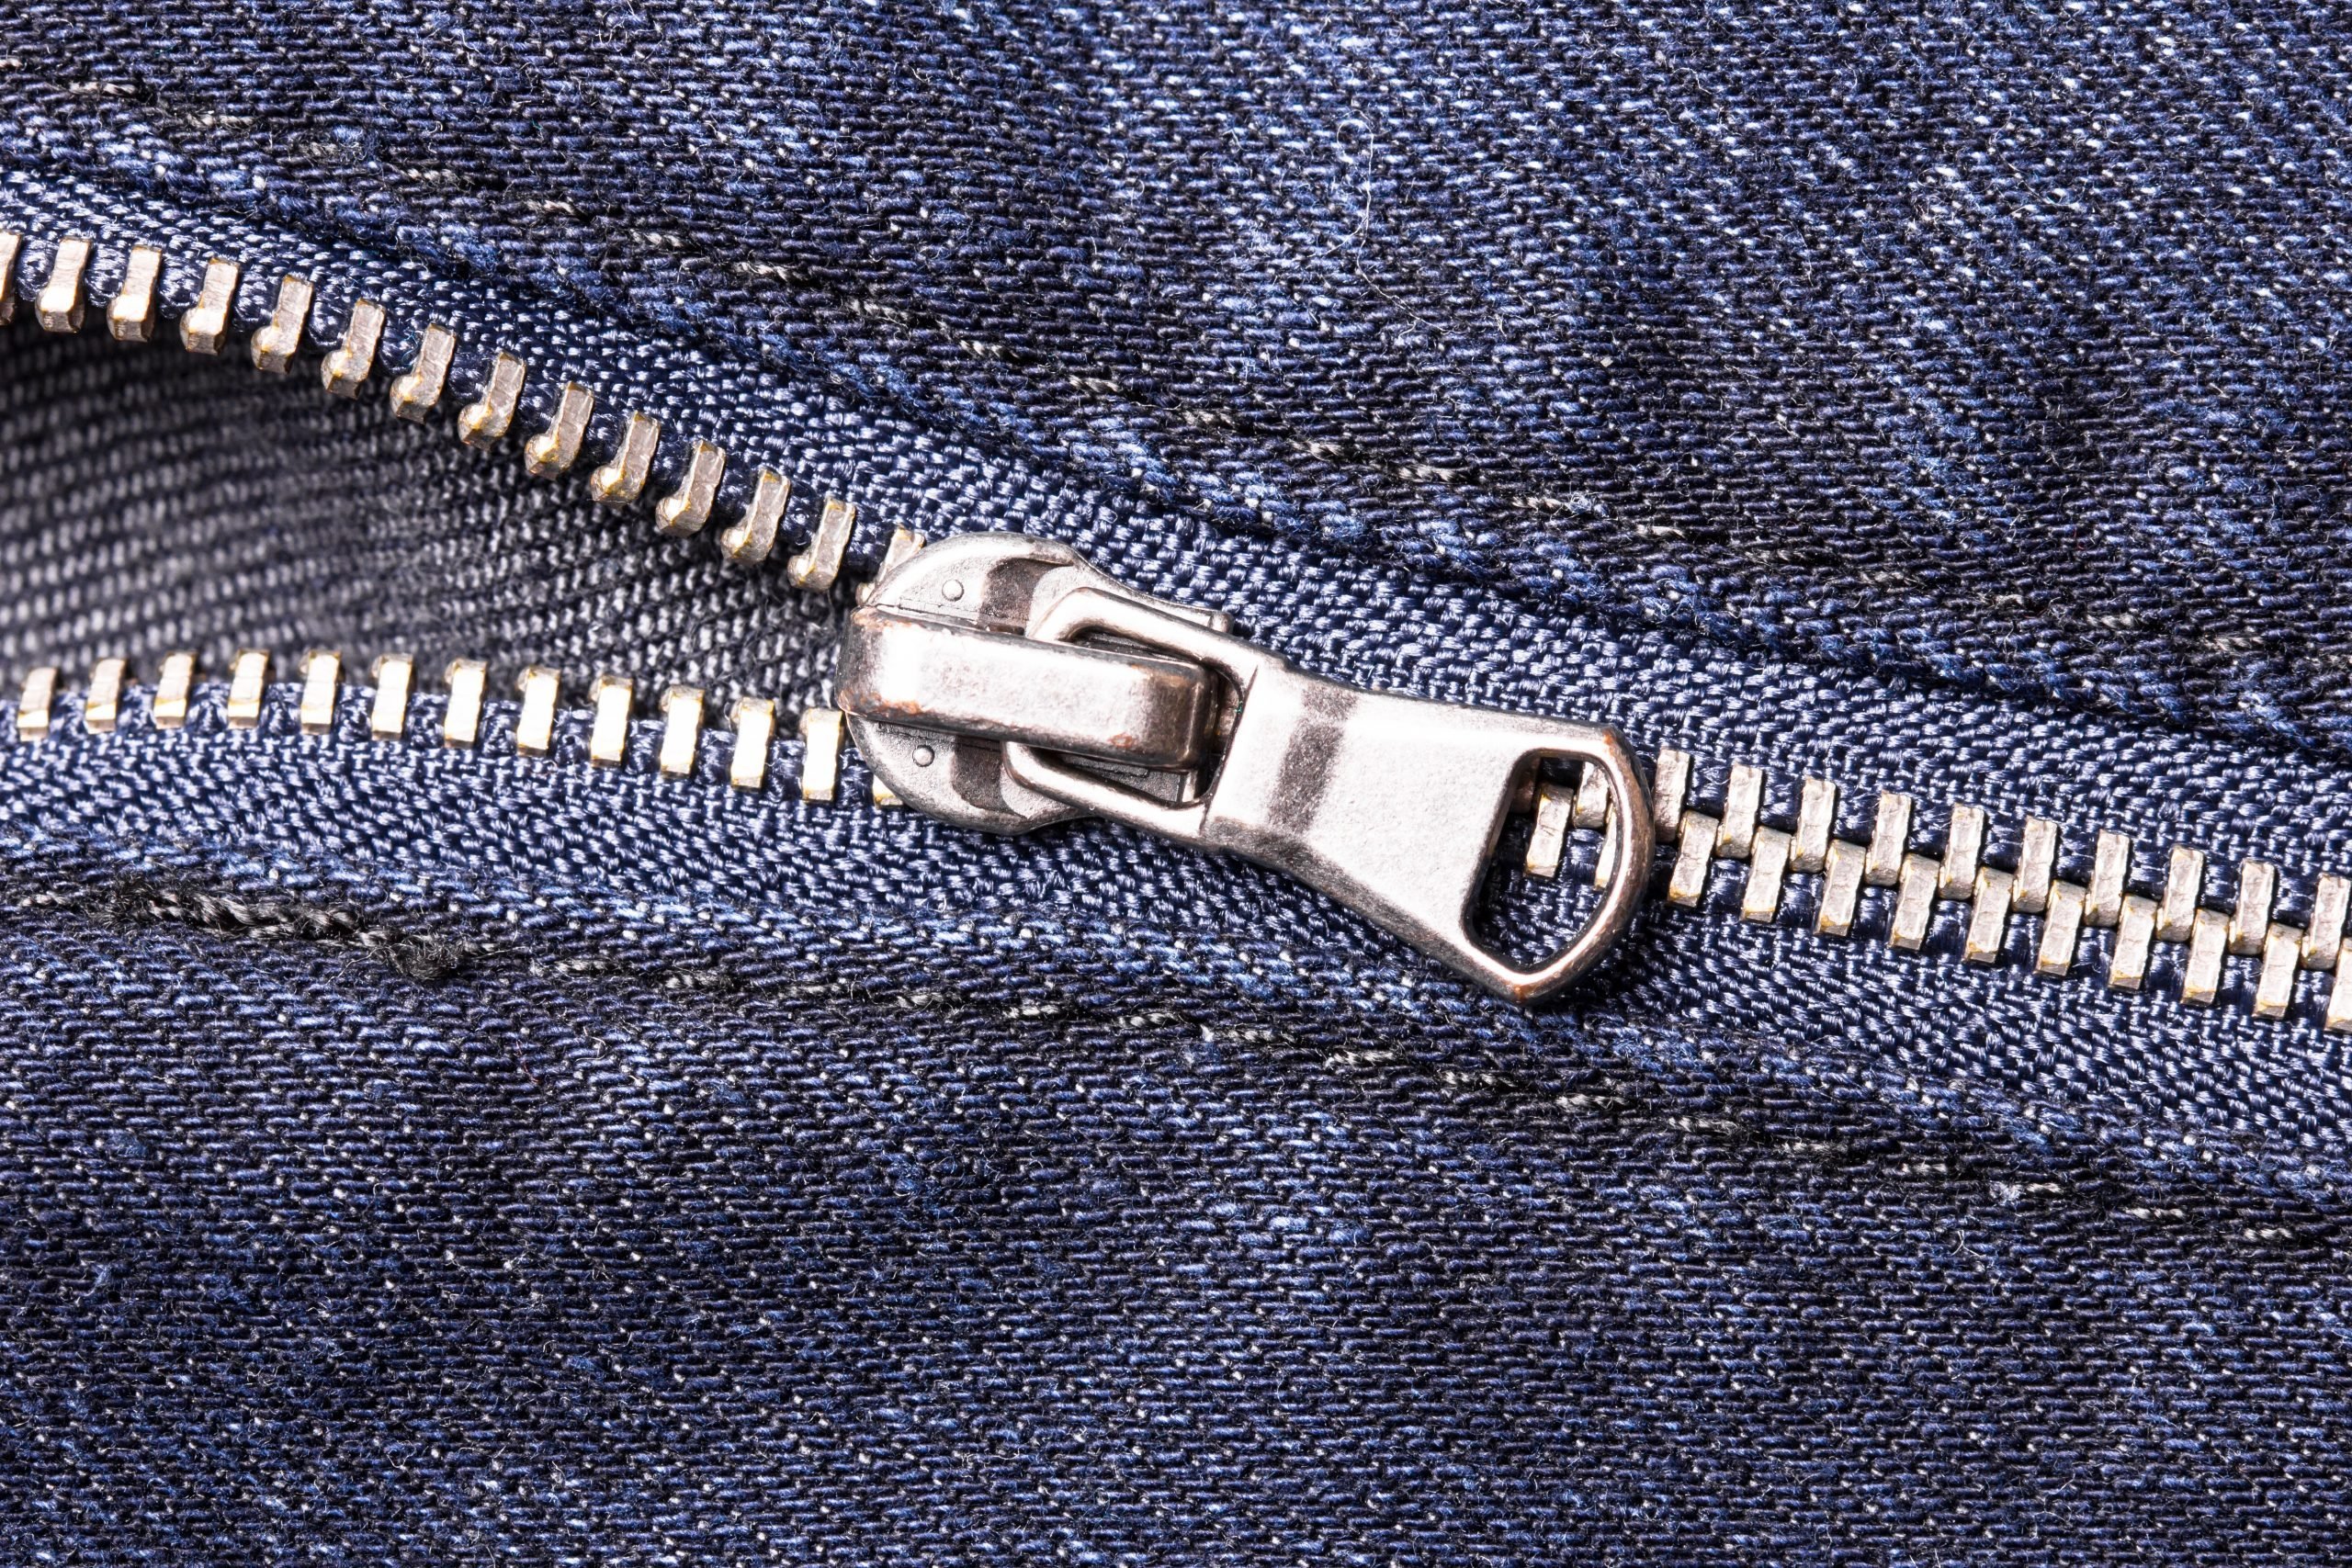 11 Brilliant Ways to Fix a Zipper